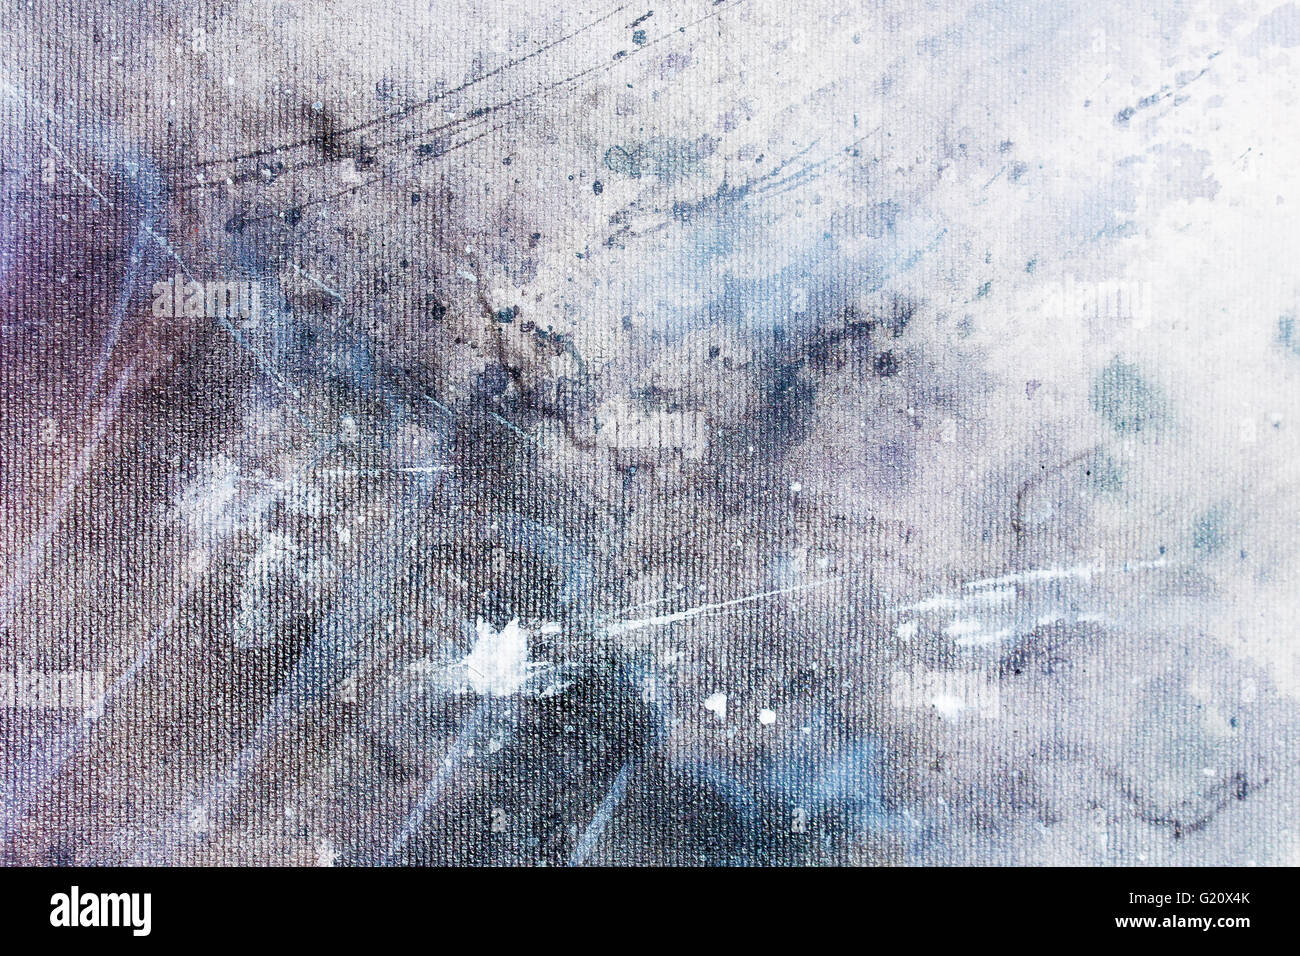 abstrakte Malerei mit verschwommen und gefärbten Struktur. Malerei auf  Leinwand Stockfotografie - Alamy